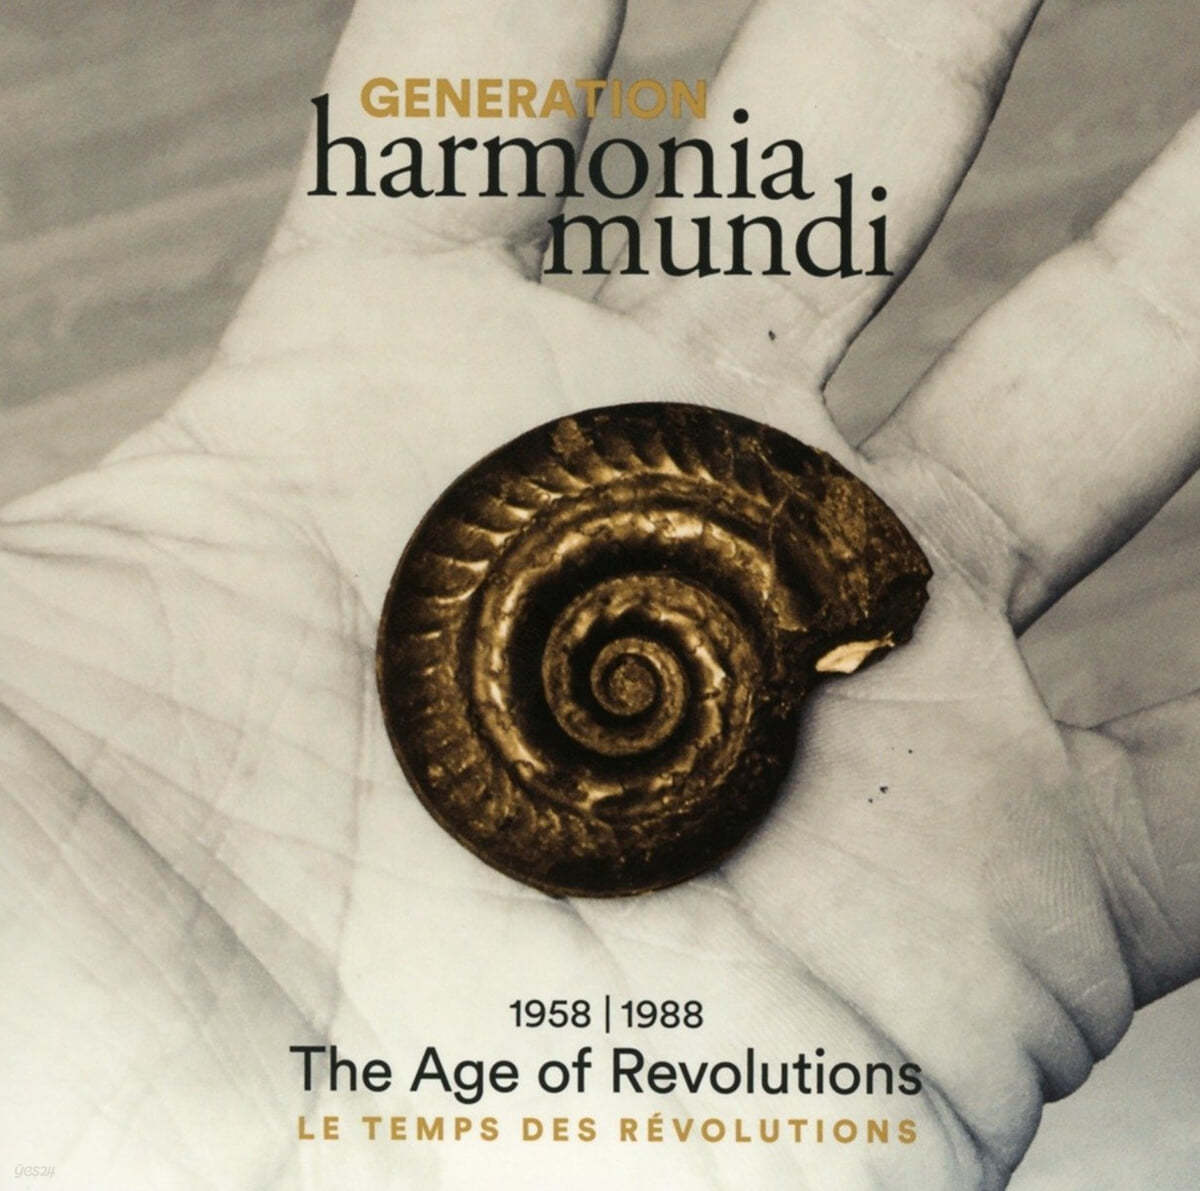 하모니아 문디 레이블 60주년 기념 박스 1: 1958-1988 혁명의 시대 (Generation harmonia mundi 1958-1988 &quot;The Age of Revolution&quot;) 